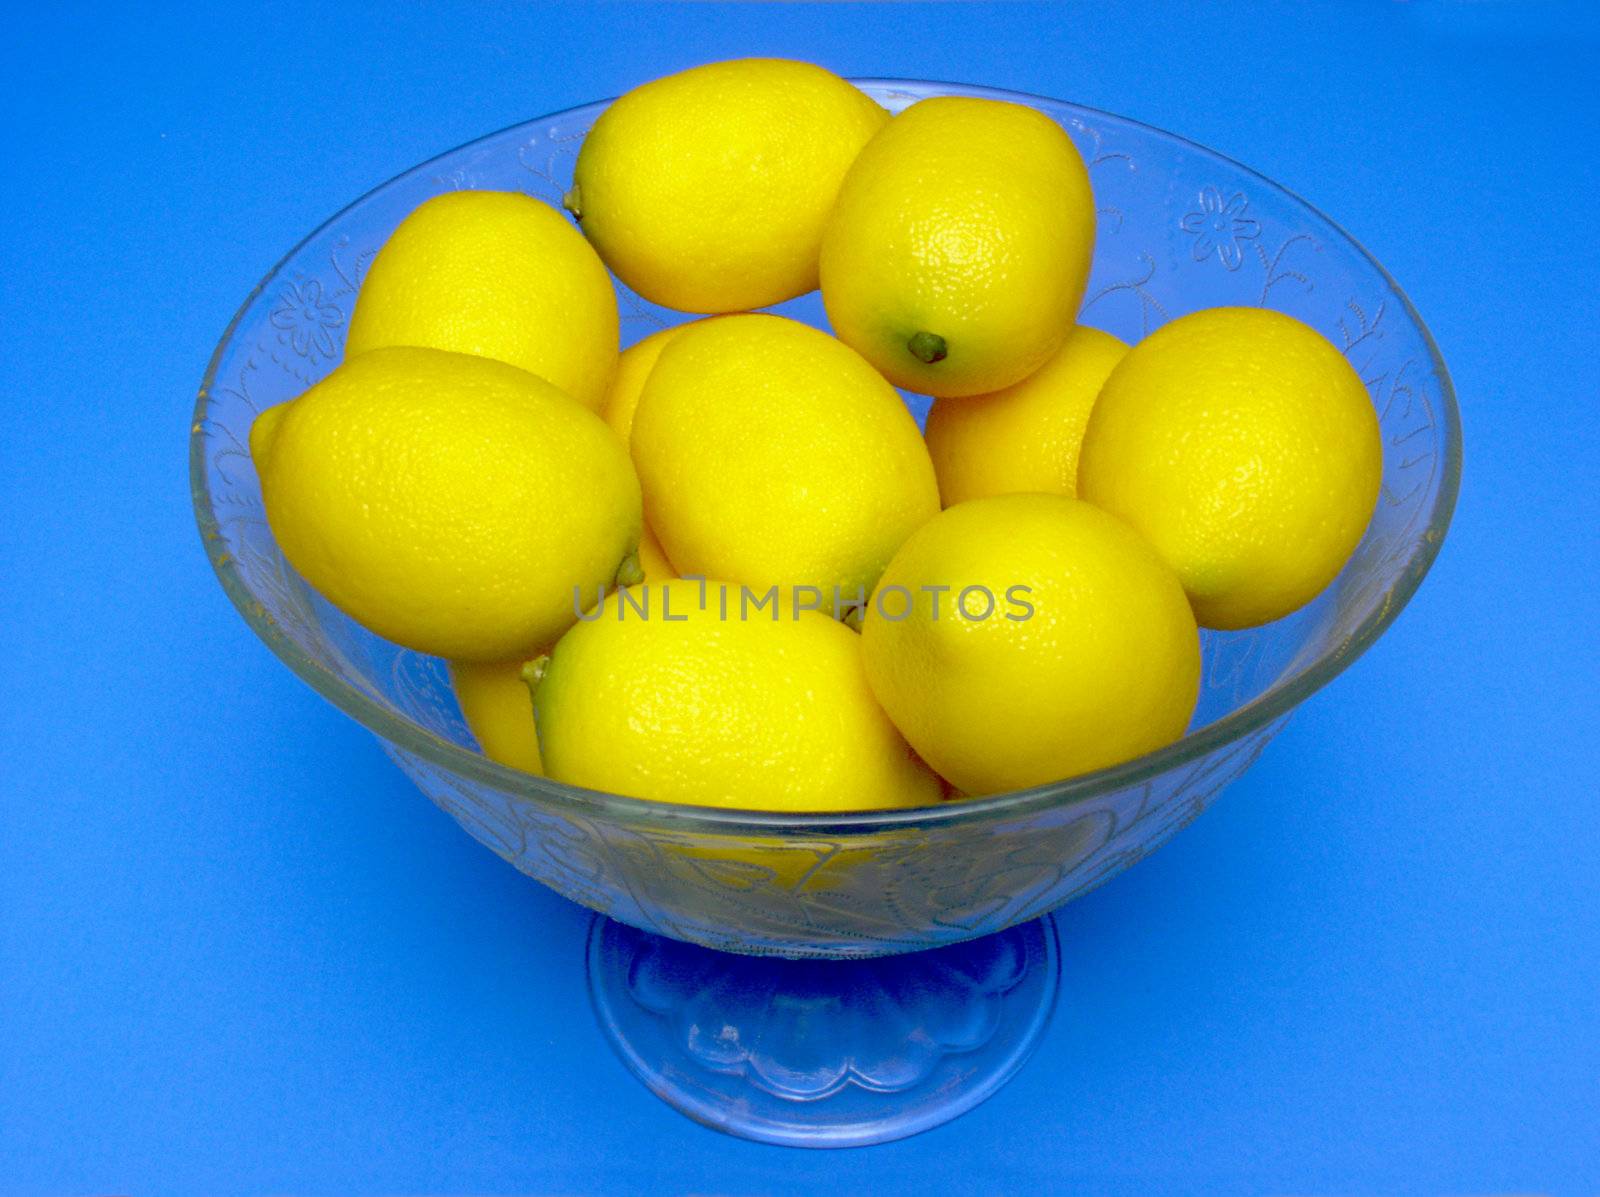 Bowl of lemons by paulglover